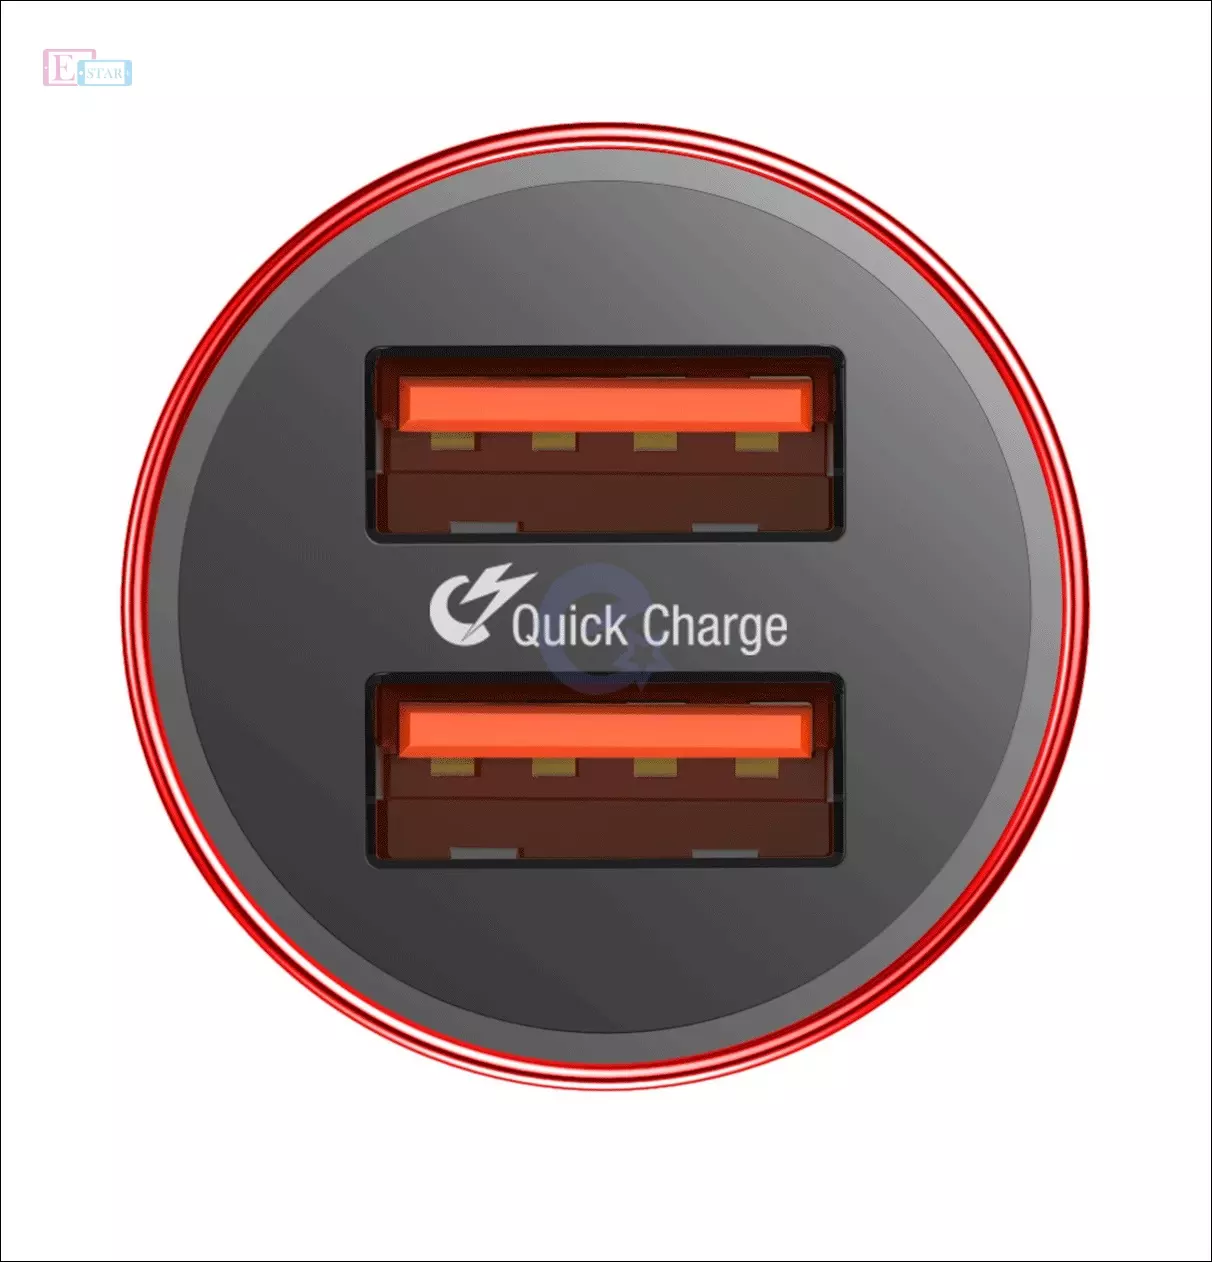 Автомобильная зарядка от прикуривателя Baseus Small Screw Dual-USB Black 36W Red (Красный) CAXLD-B09